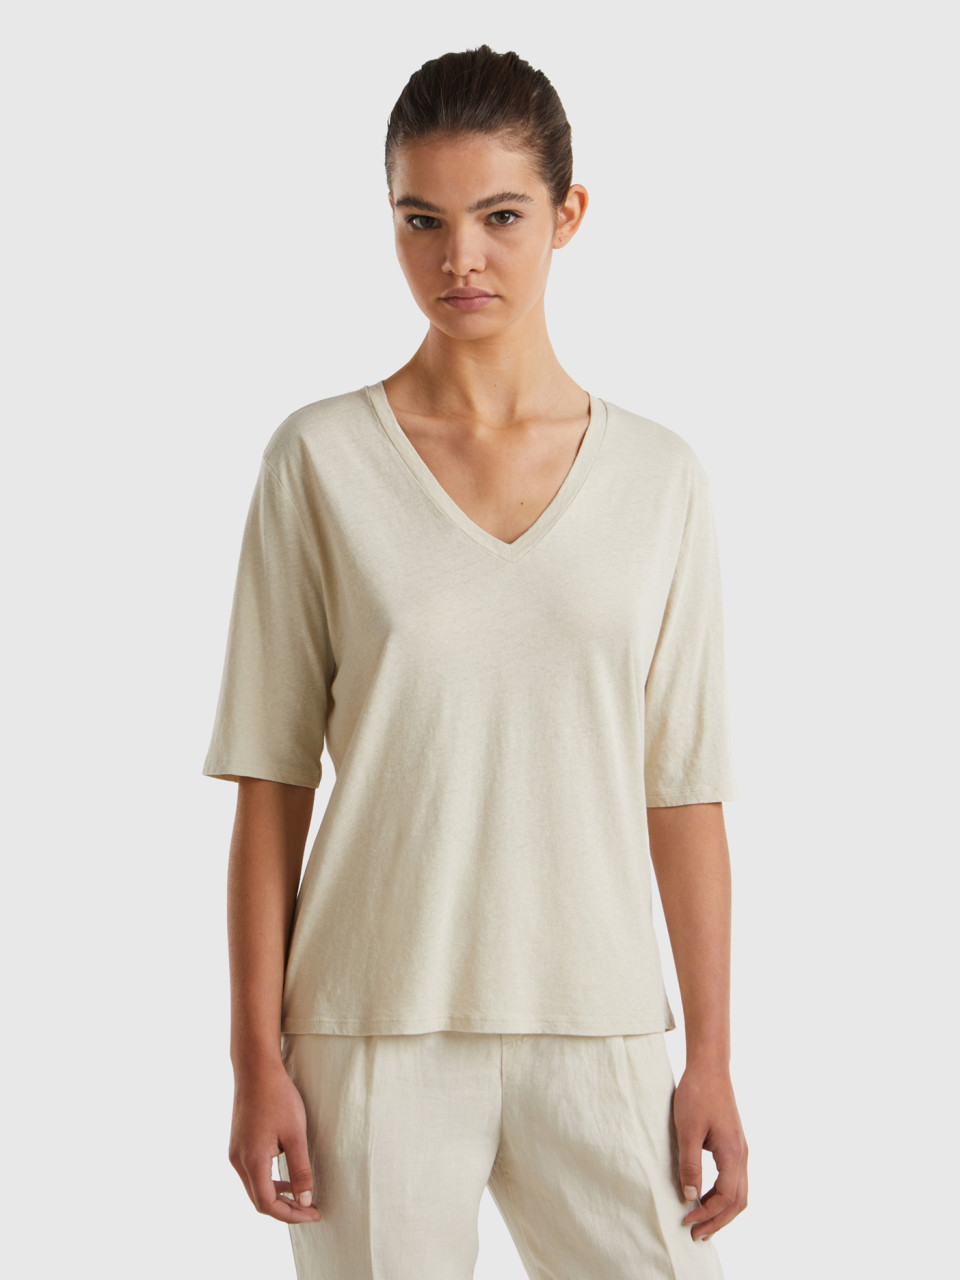 Benetton, T-shirt In Cotton And Linen Blend, Beige, Women